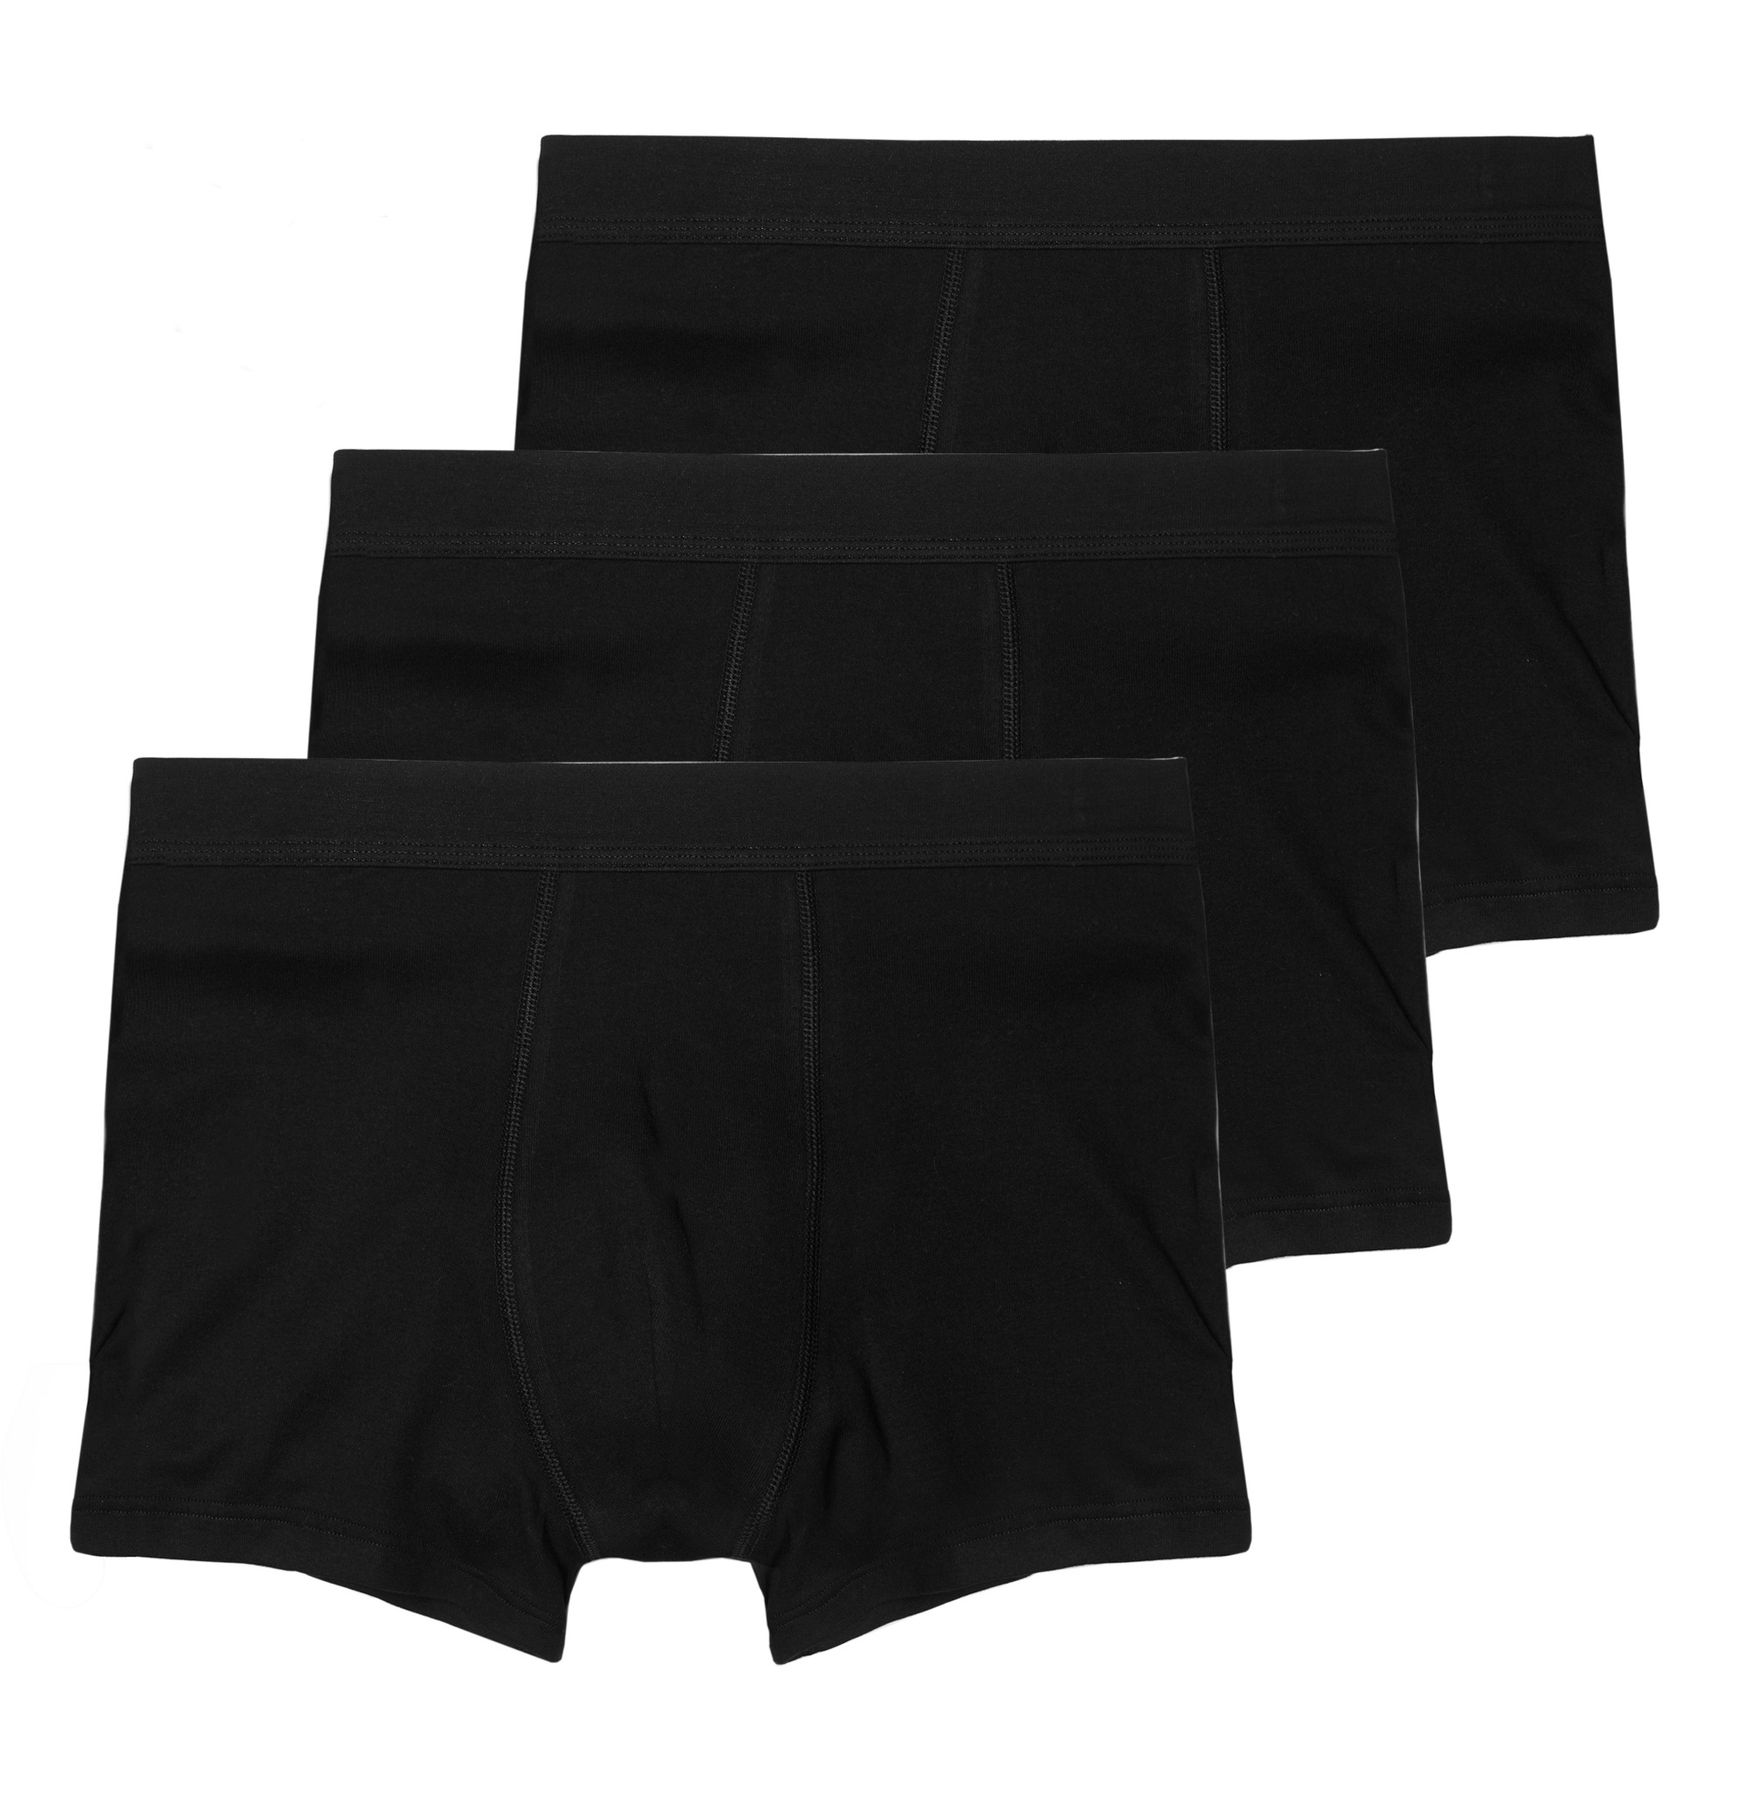 Боксеры Haasis Bodywear 3er-Set: Pants, черный цена и фото